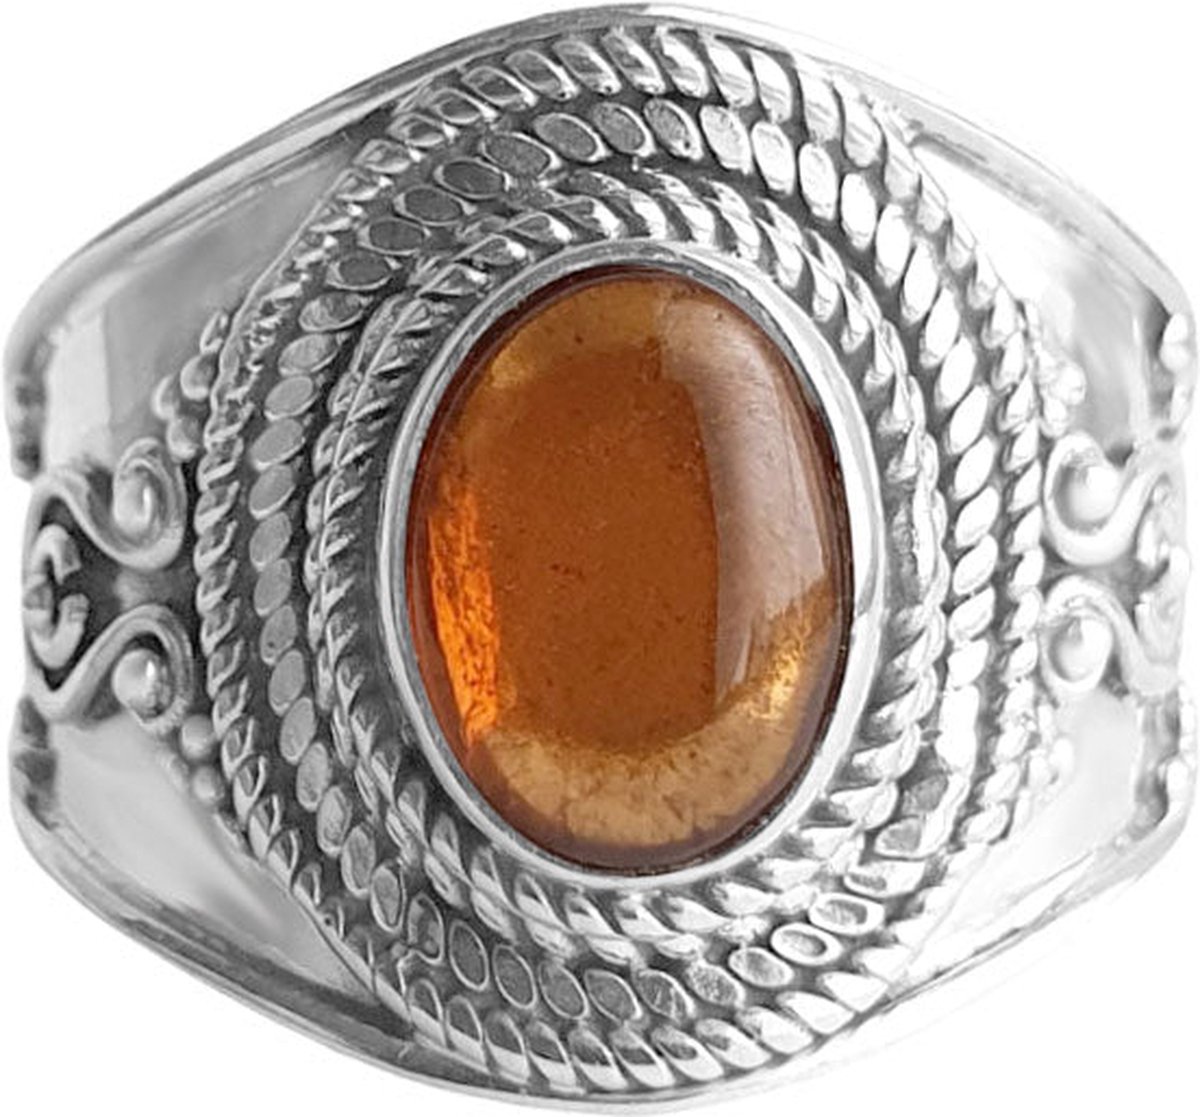 Jewelryz | Hina | Ring 925 zilver met hessoniet edelsteen | 18.00 mm / maat 57